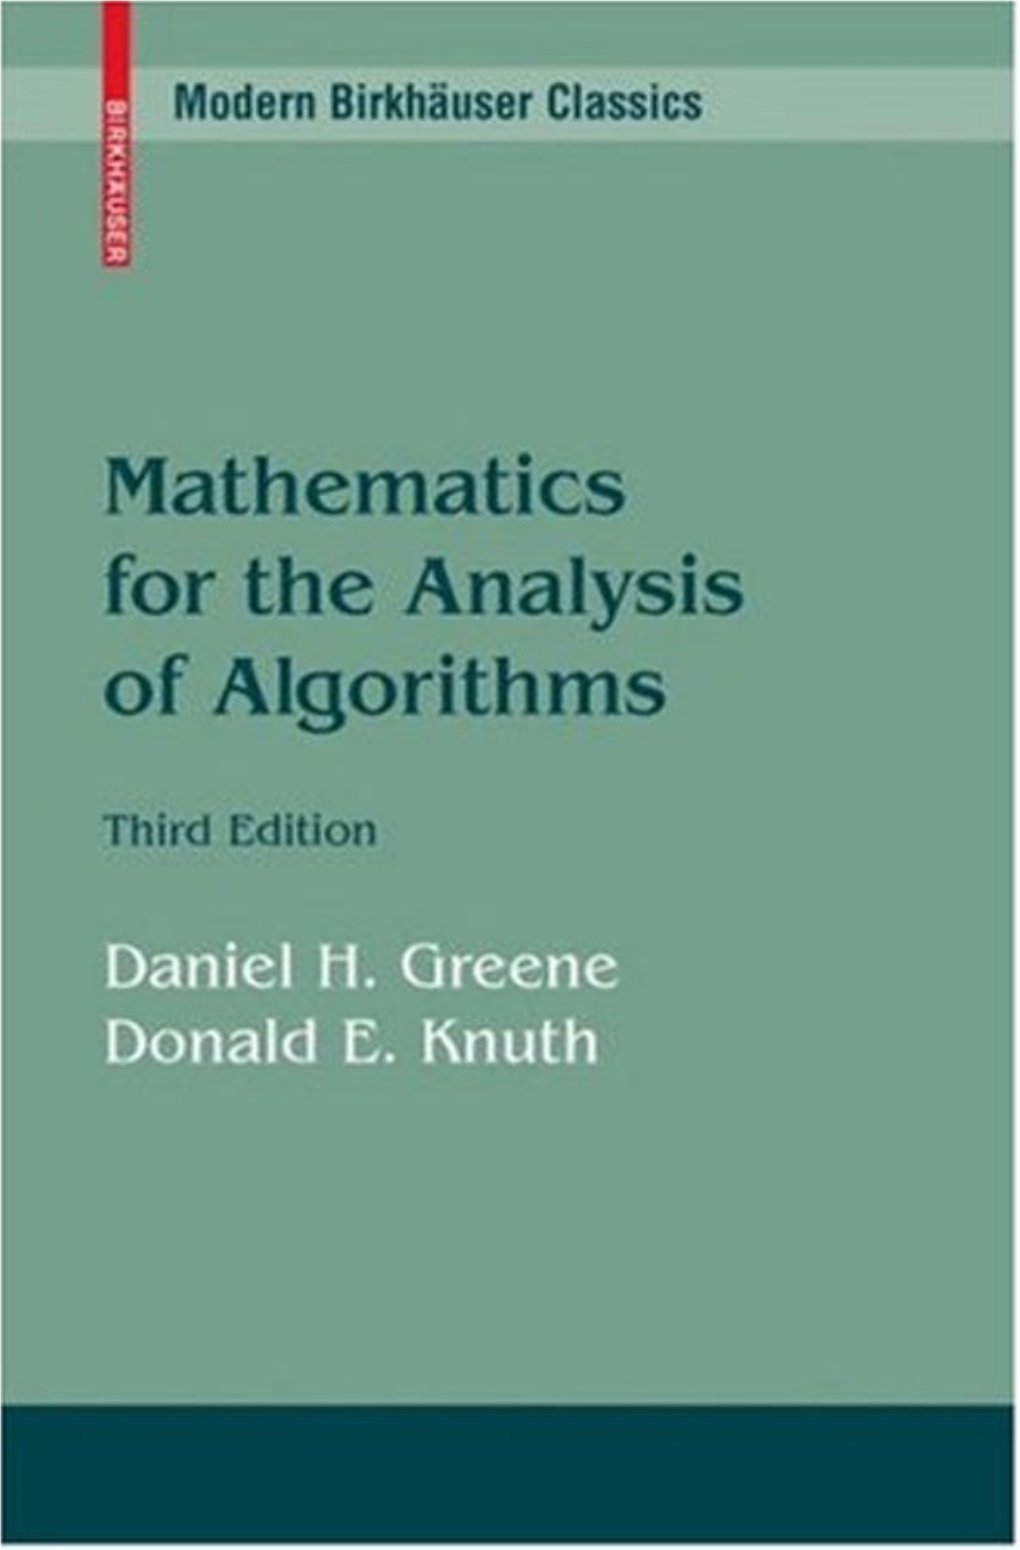 Mathematics for Algorithm Analysis.Pdf